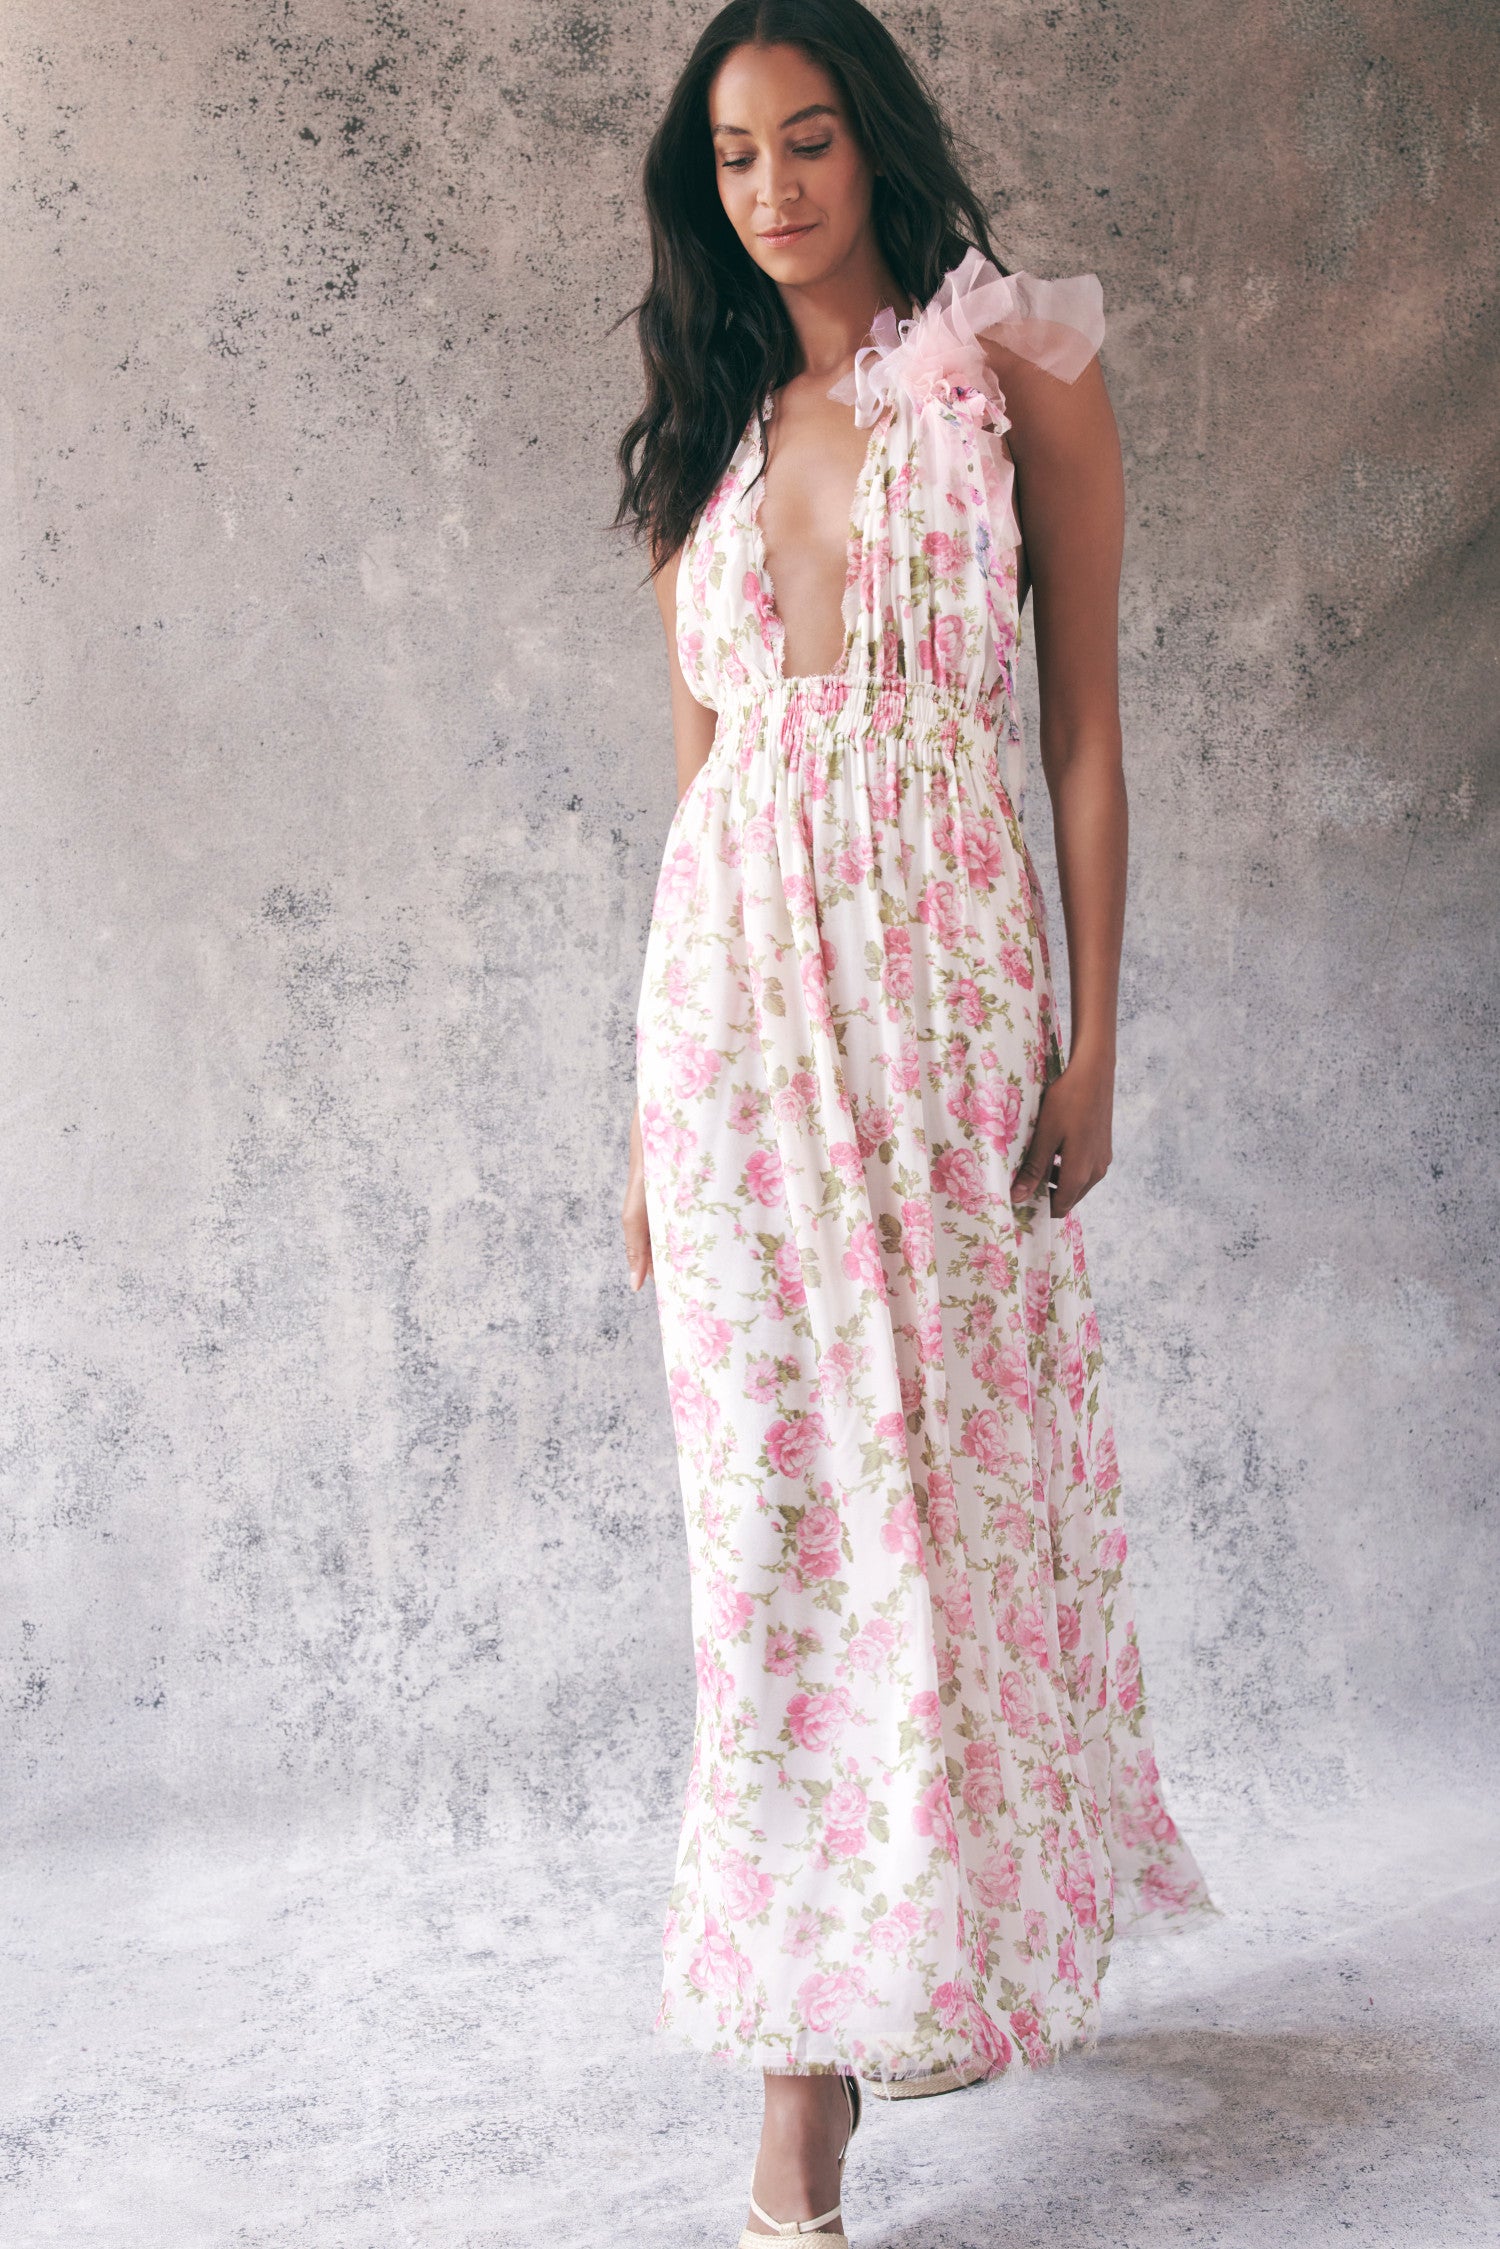 Model wearing pink floral halter maxi dress